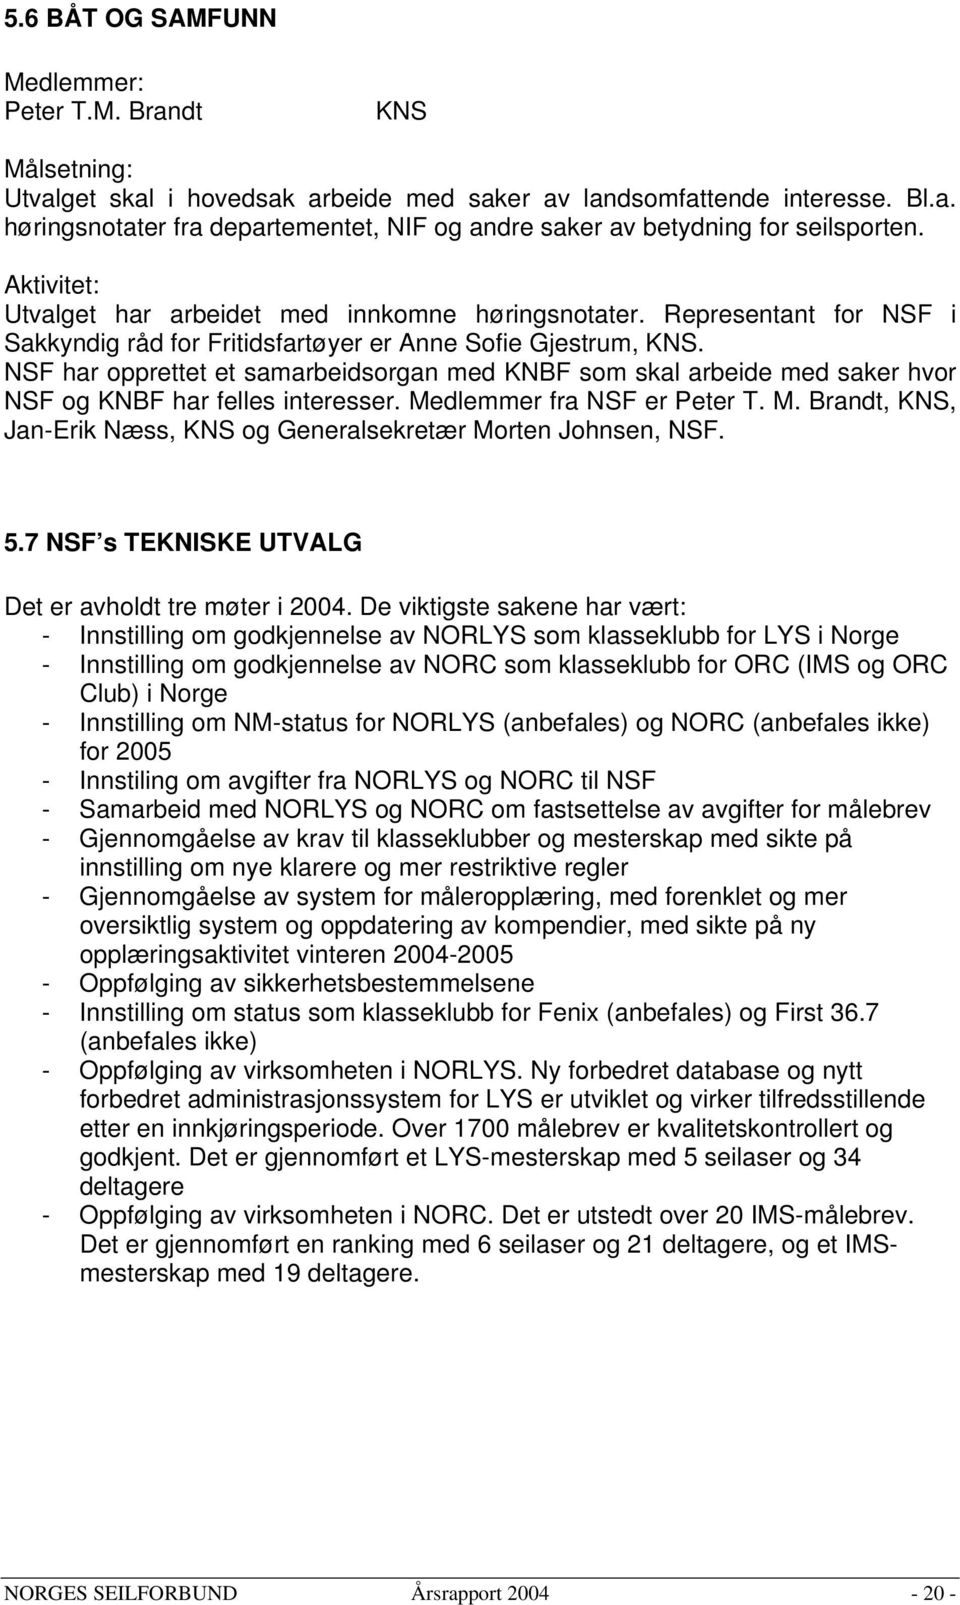 NSF har opprettet et samarbeidsorgan med KNBF som skal arbeide med saker hvor NSF og KNBF har felles interesser. Medlemmer fra NSF er Peter T. M. Brandt, KNS, Jan-Erik Næss, KNS og Generalsekretær Morten Johnsen, NSF.